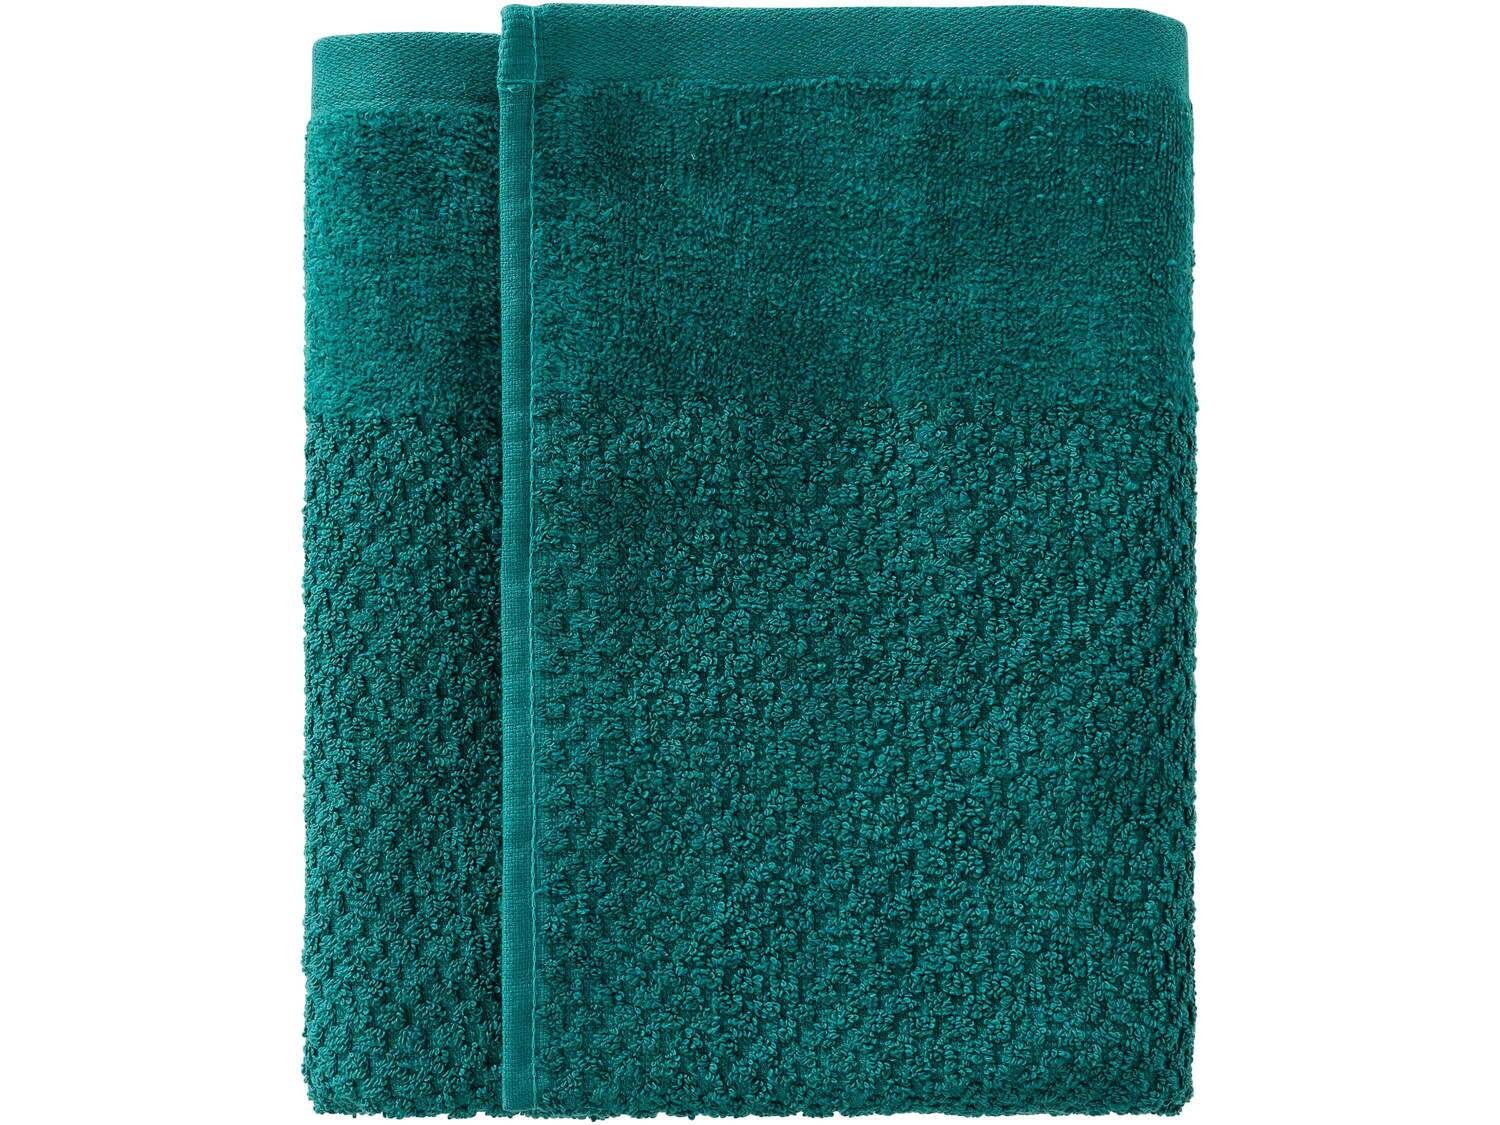 Ręcznik 50 x 100 cm Miomare, cena 7,99 PLN 
- 450 g/m2
- 100% bawełny
- miękkie ...